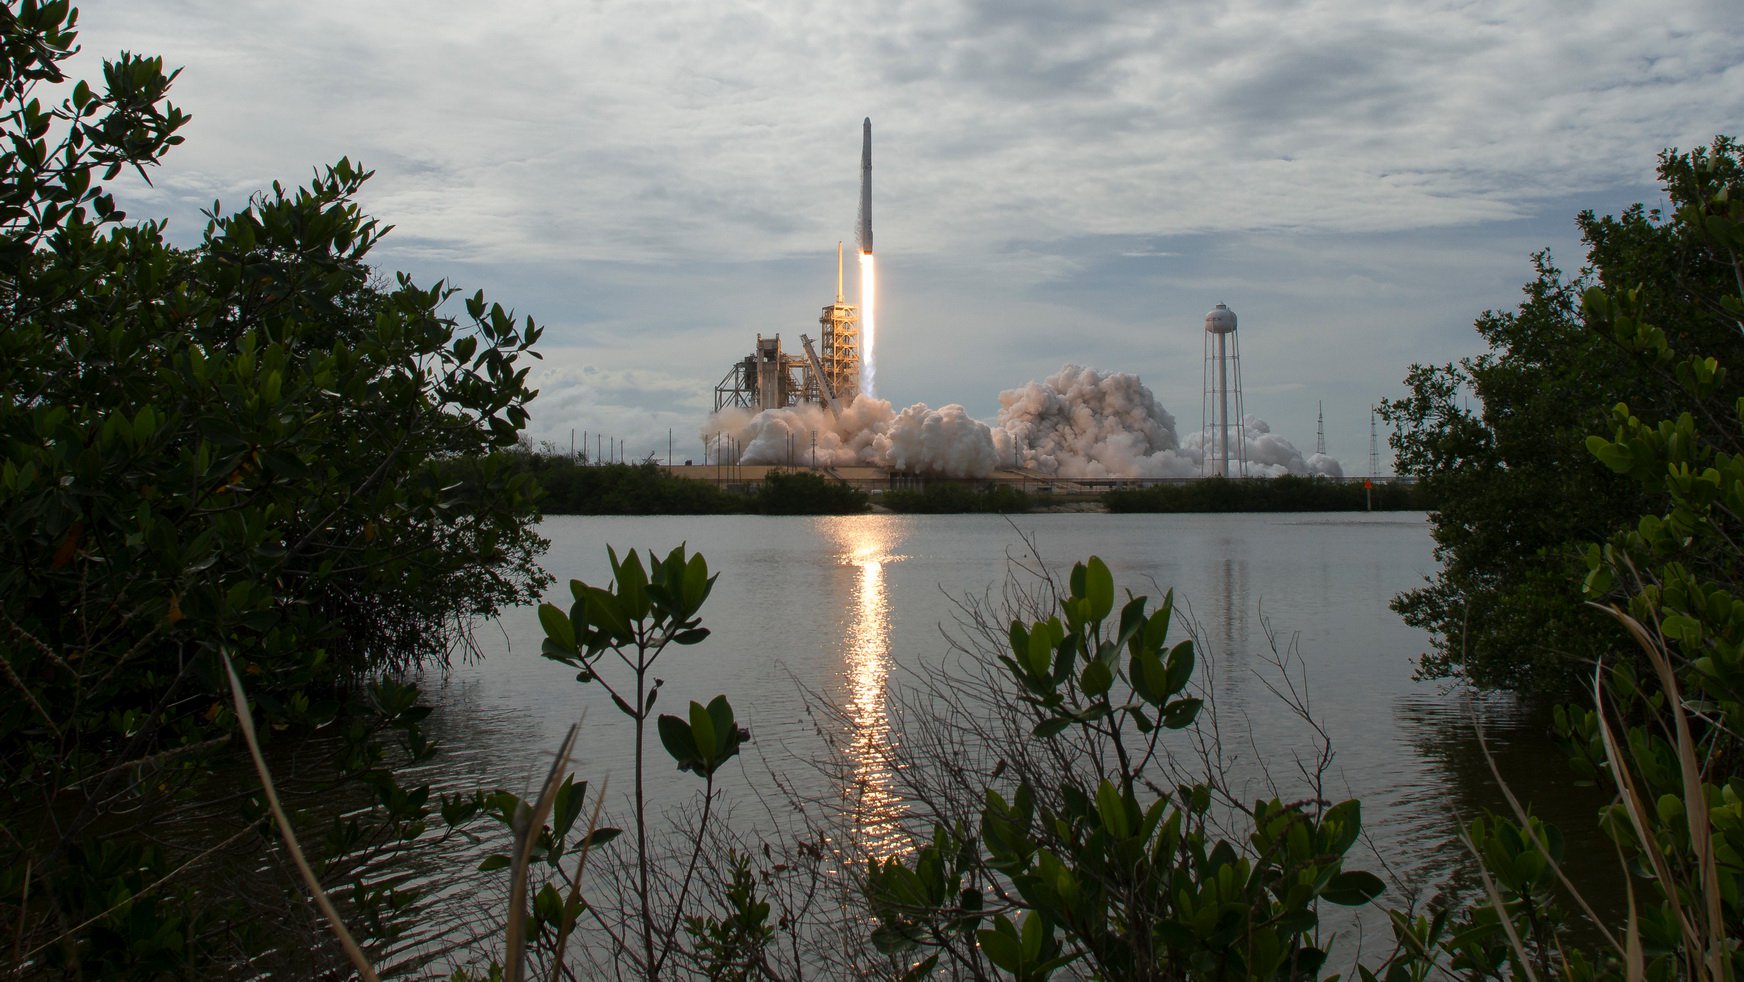 कंपनी SpaceX की अनुमति प्राप्त हुआ है लांच करने के लिए 7500 से अधिक इंटरनेट उपग्रहों